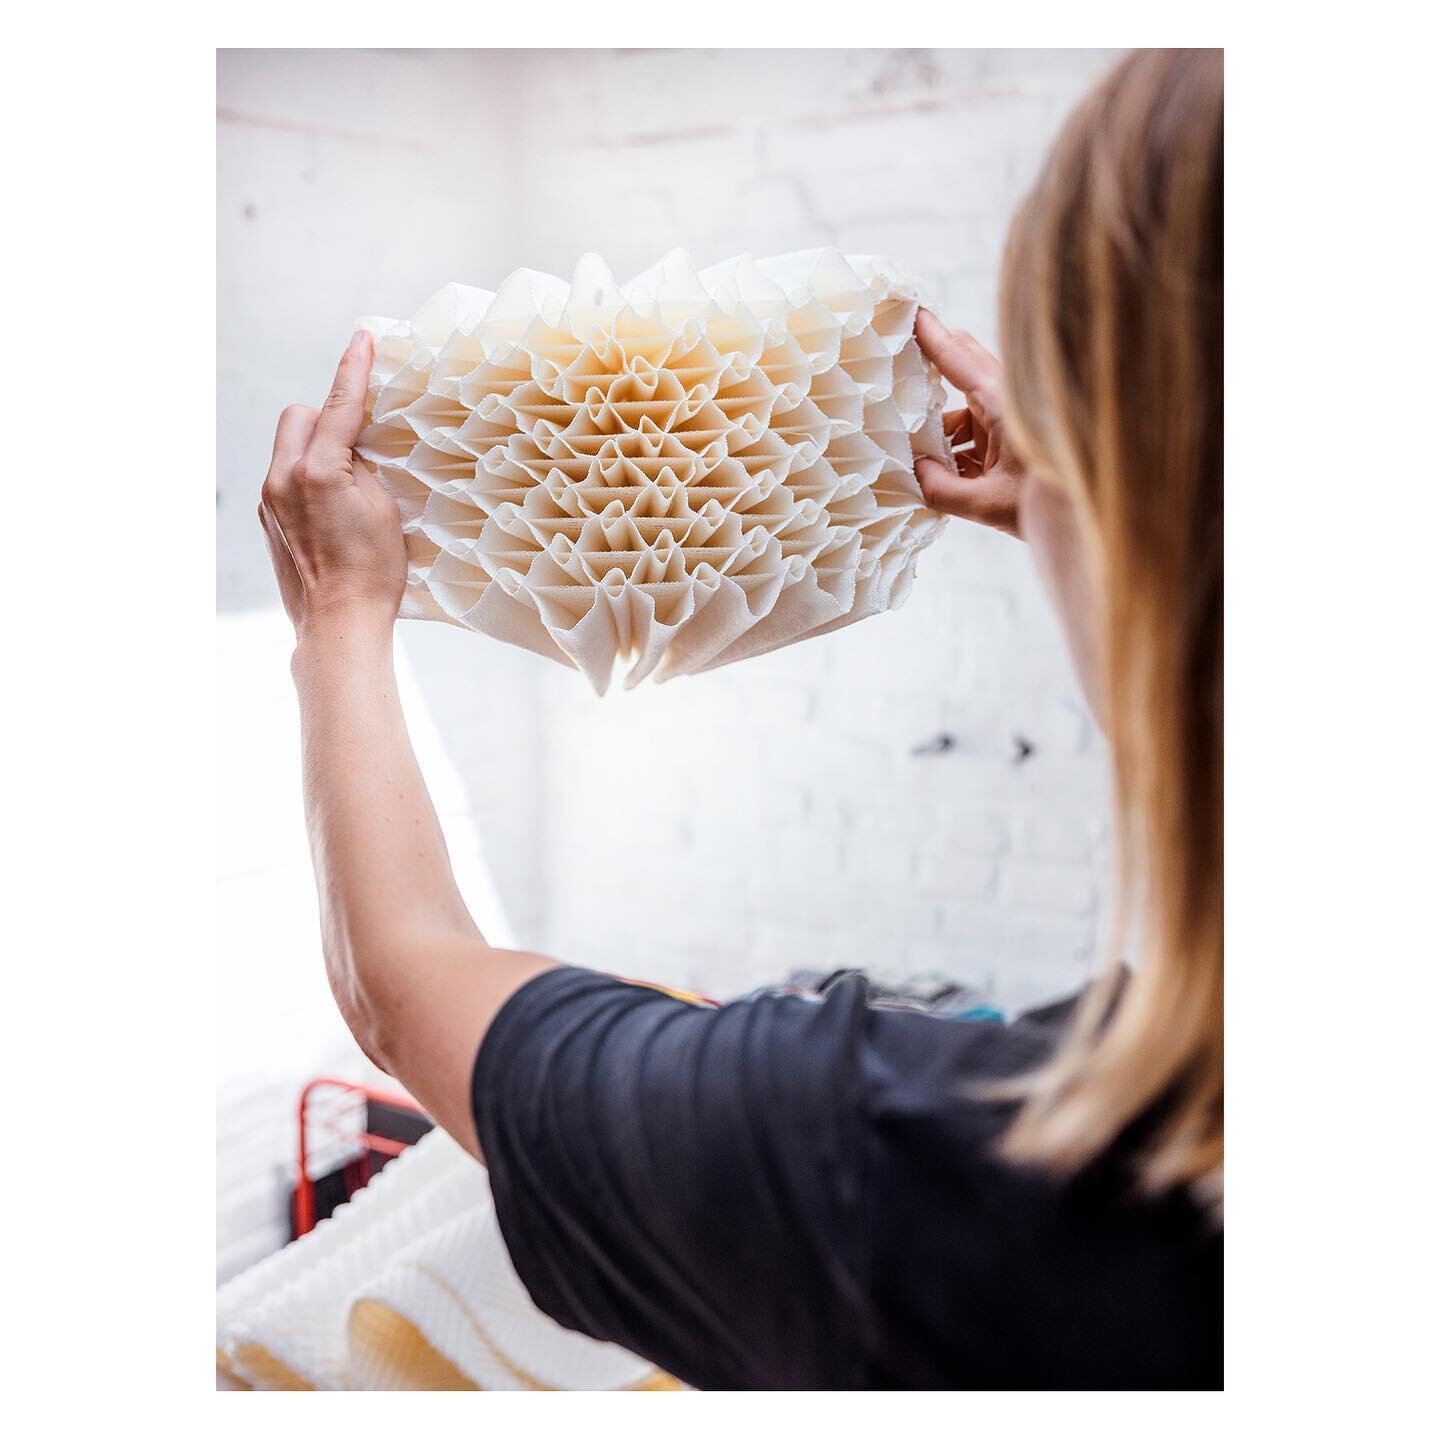 me and my work captured by @ernieenkelaar for @vtwonen 

#textiledesign #weaving #3dweaving #textileresearch #handweaving #weavingstudio #atelier #esthervanschuylenbergh #vtwonen